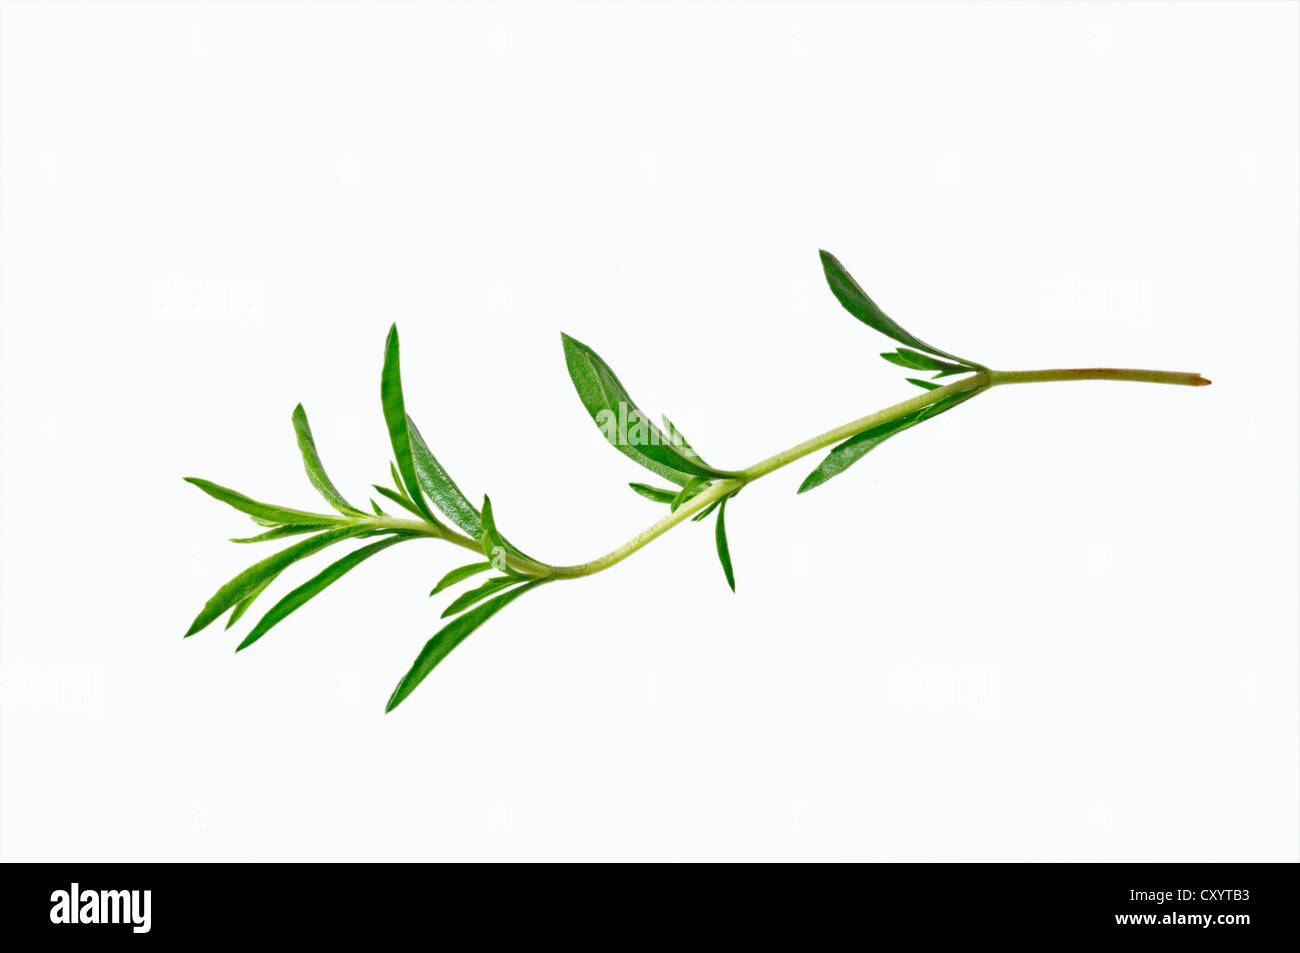 Invierno sabroso (Satureja montana), que se encuentra en el sur de Europa, cultivada como planta de especias Foto de stock